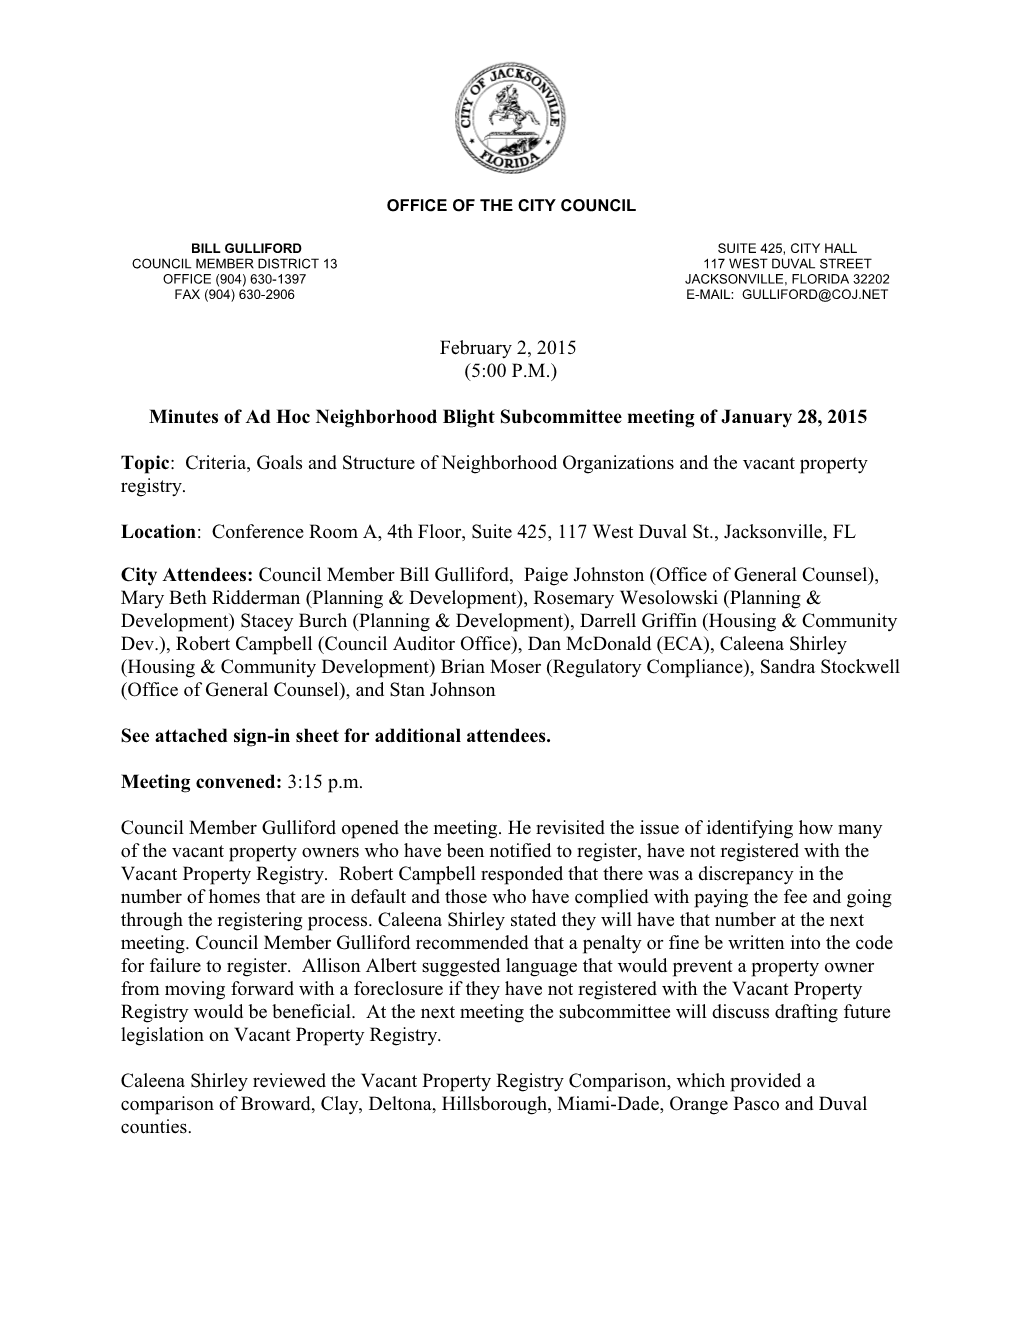 Minutes of Ad Hoc Neighborhood Blight Subcommittee Meetingof January 28, 2015